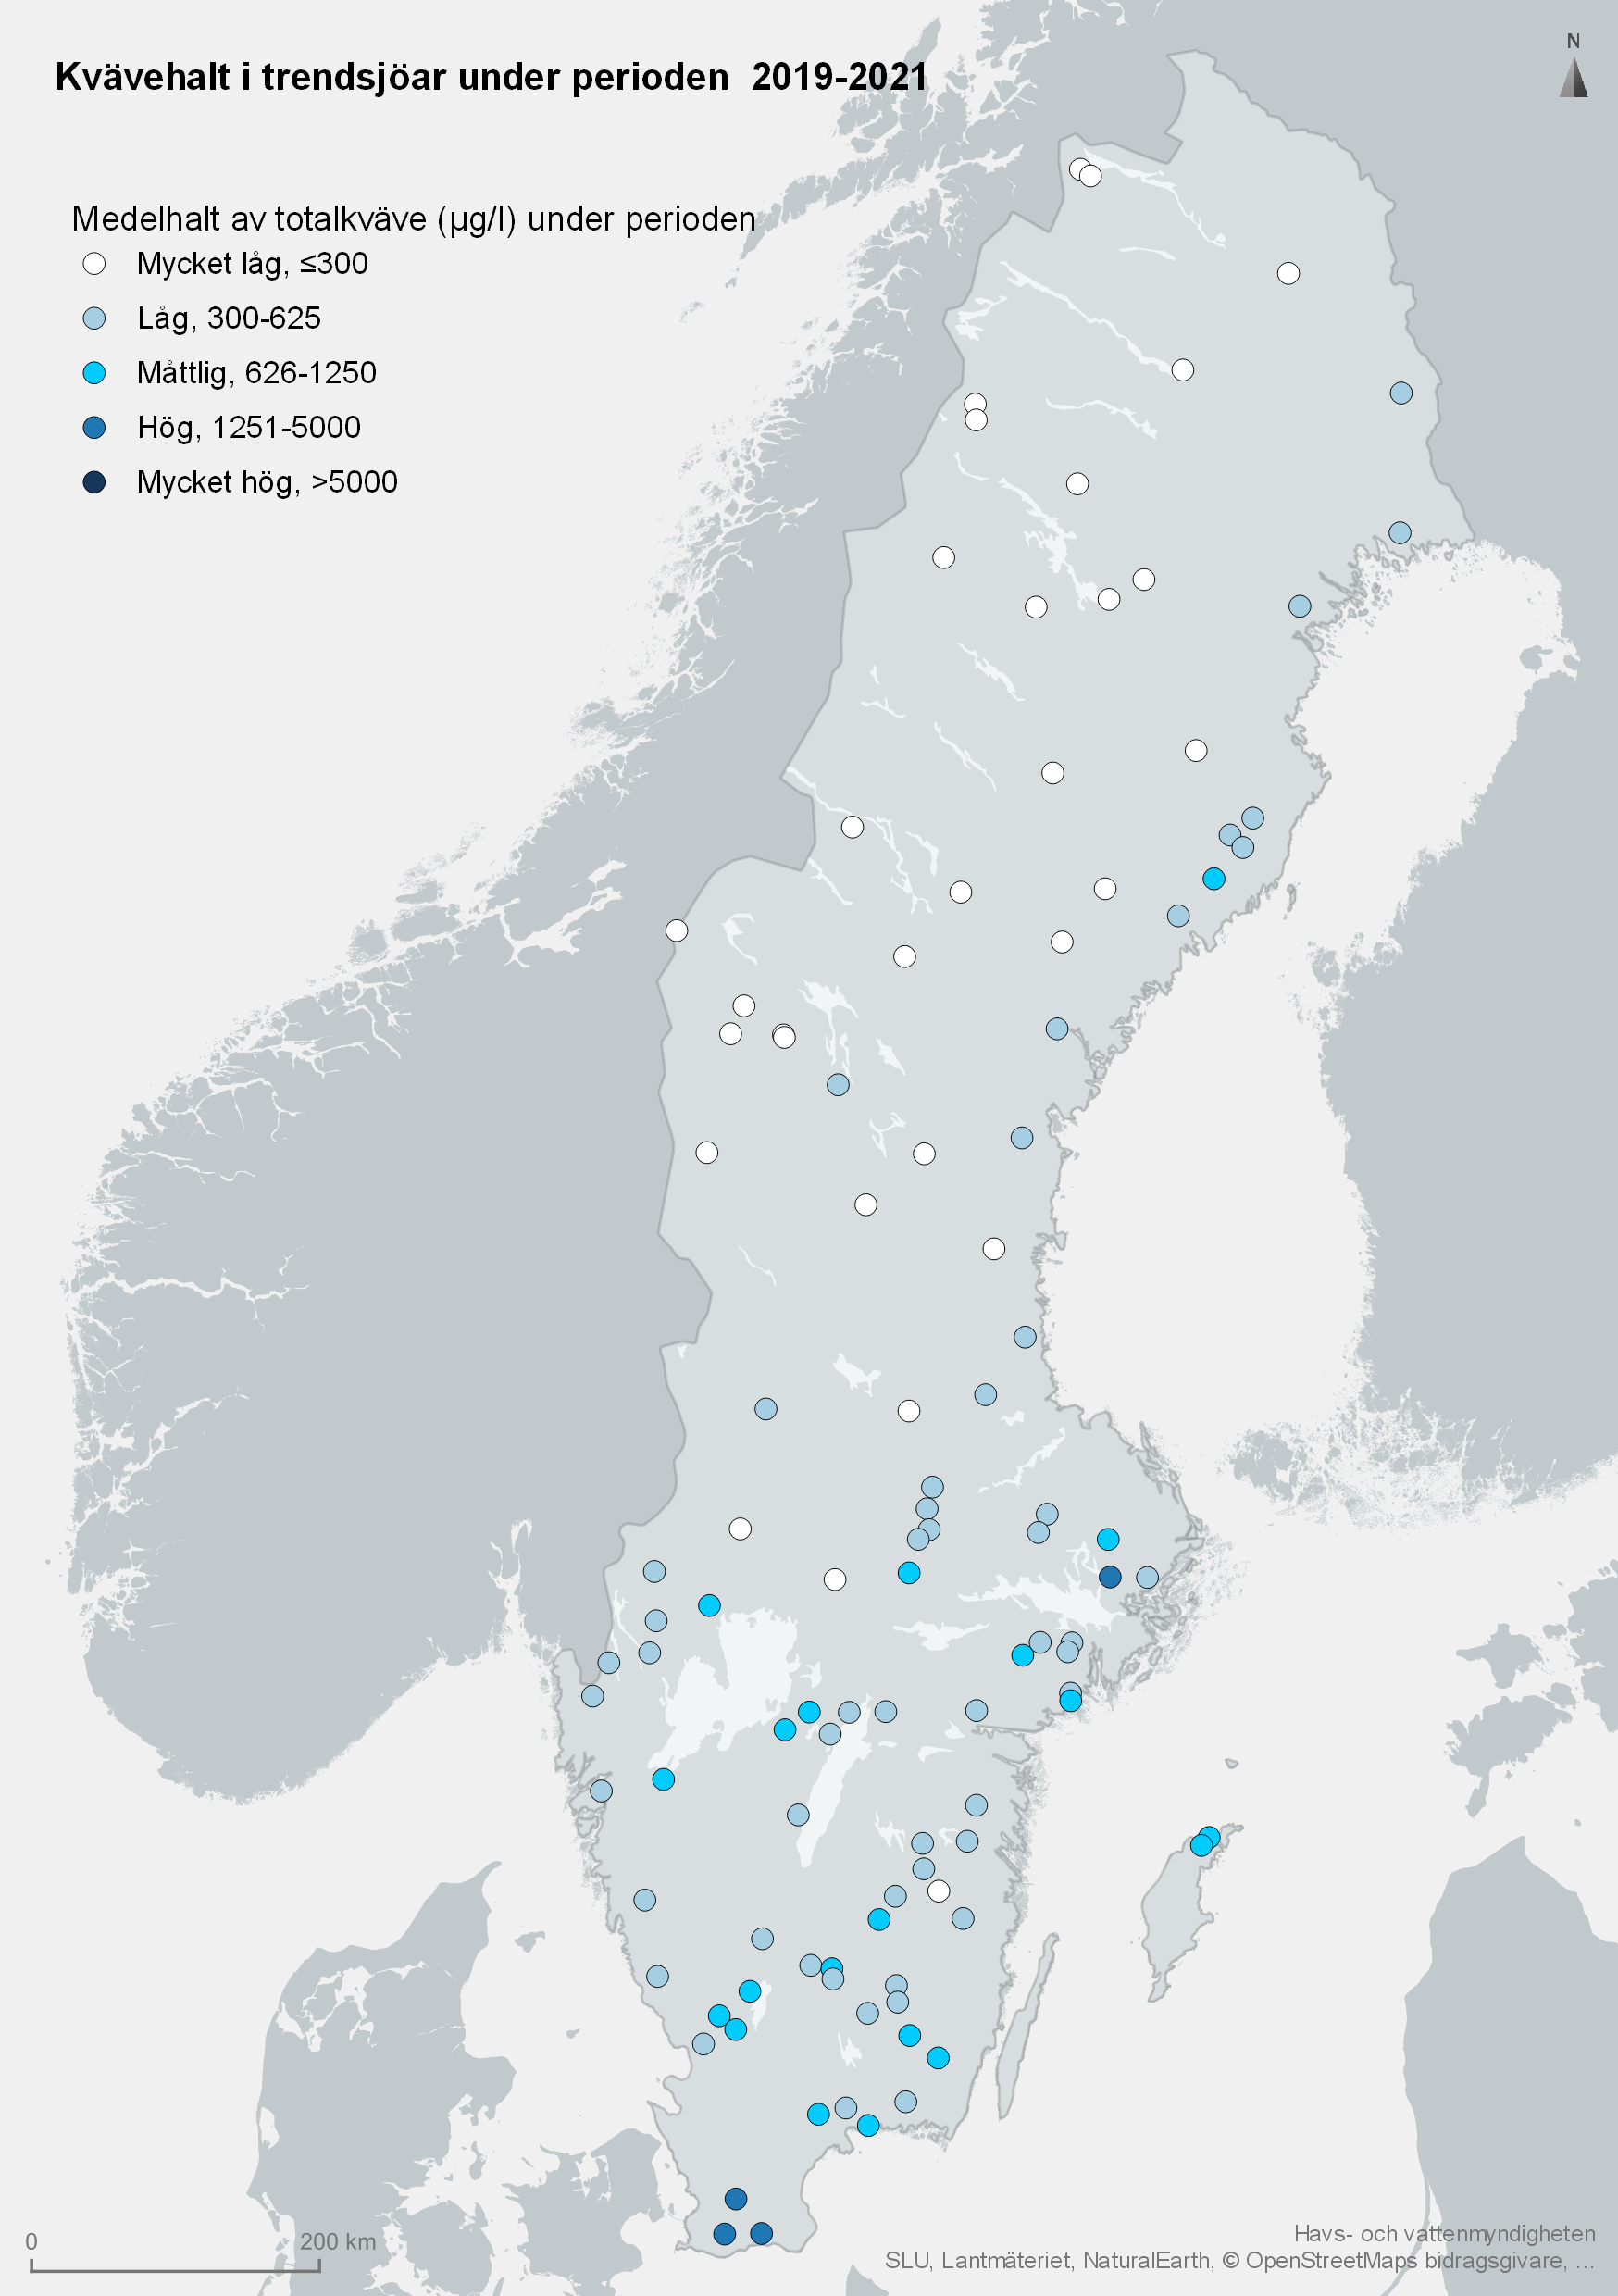 Medelhalt av totalkväve i trendsjöar 2019-2021. Karta, illustration.